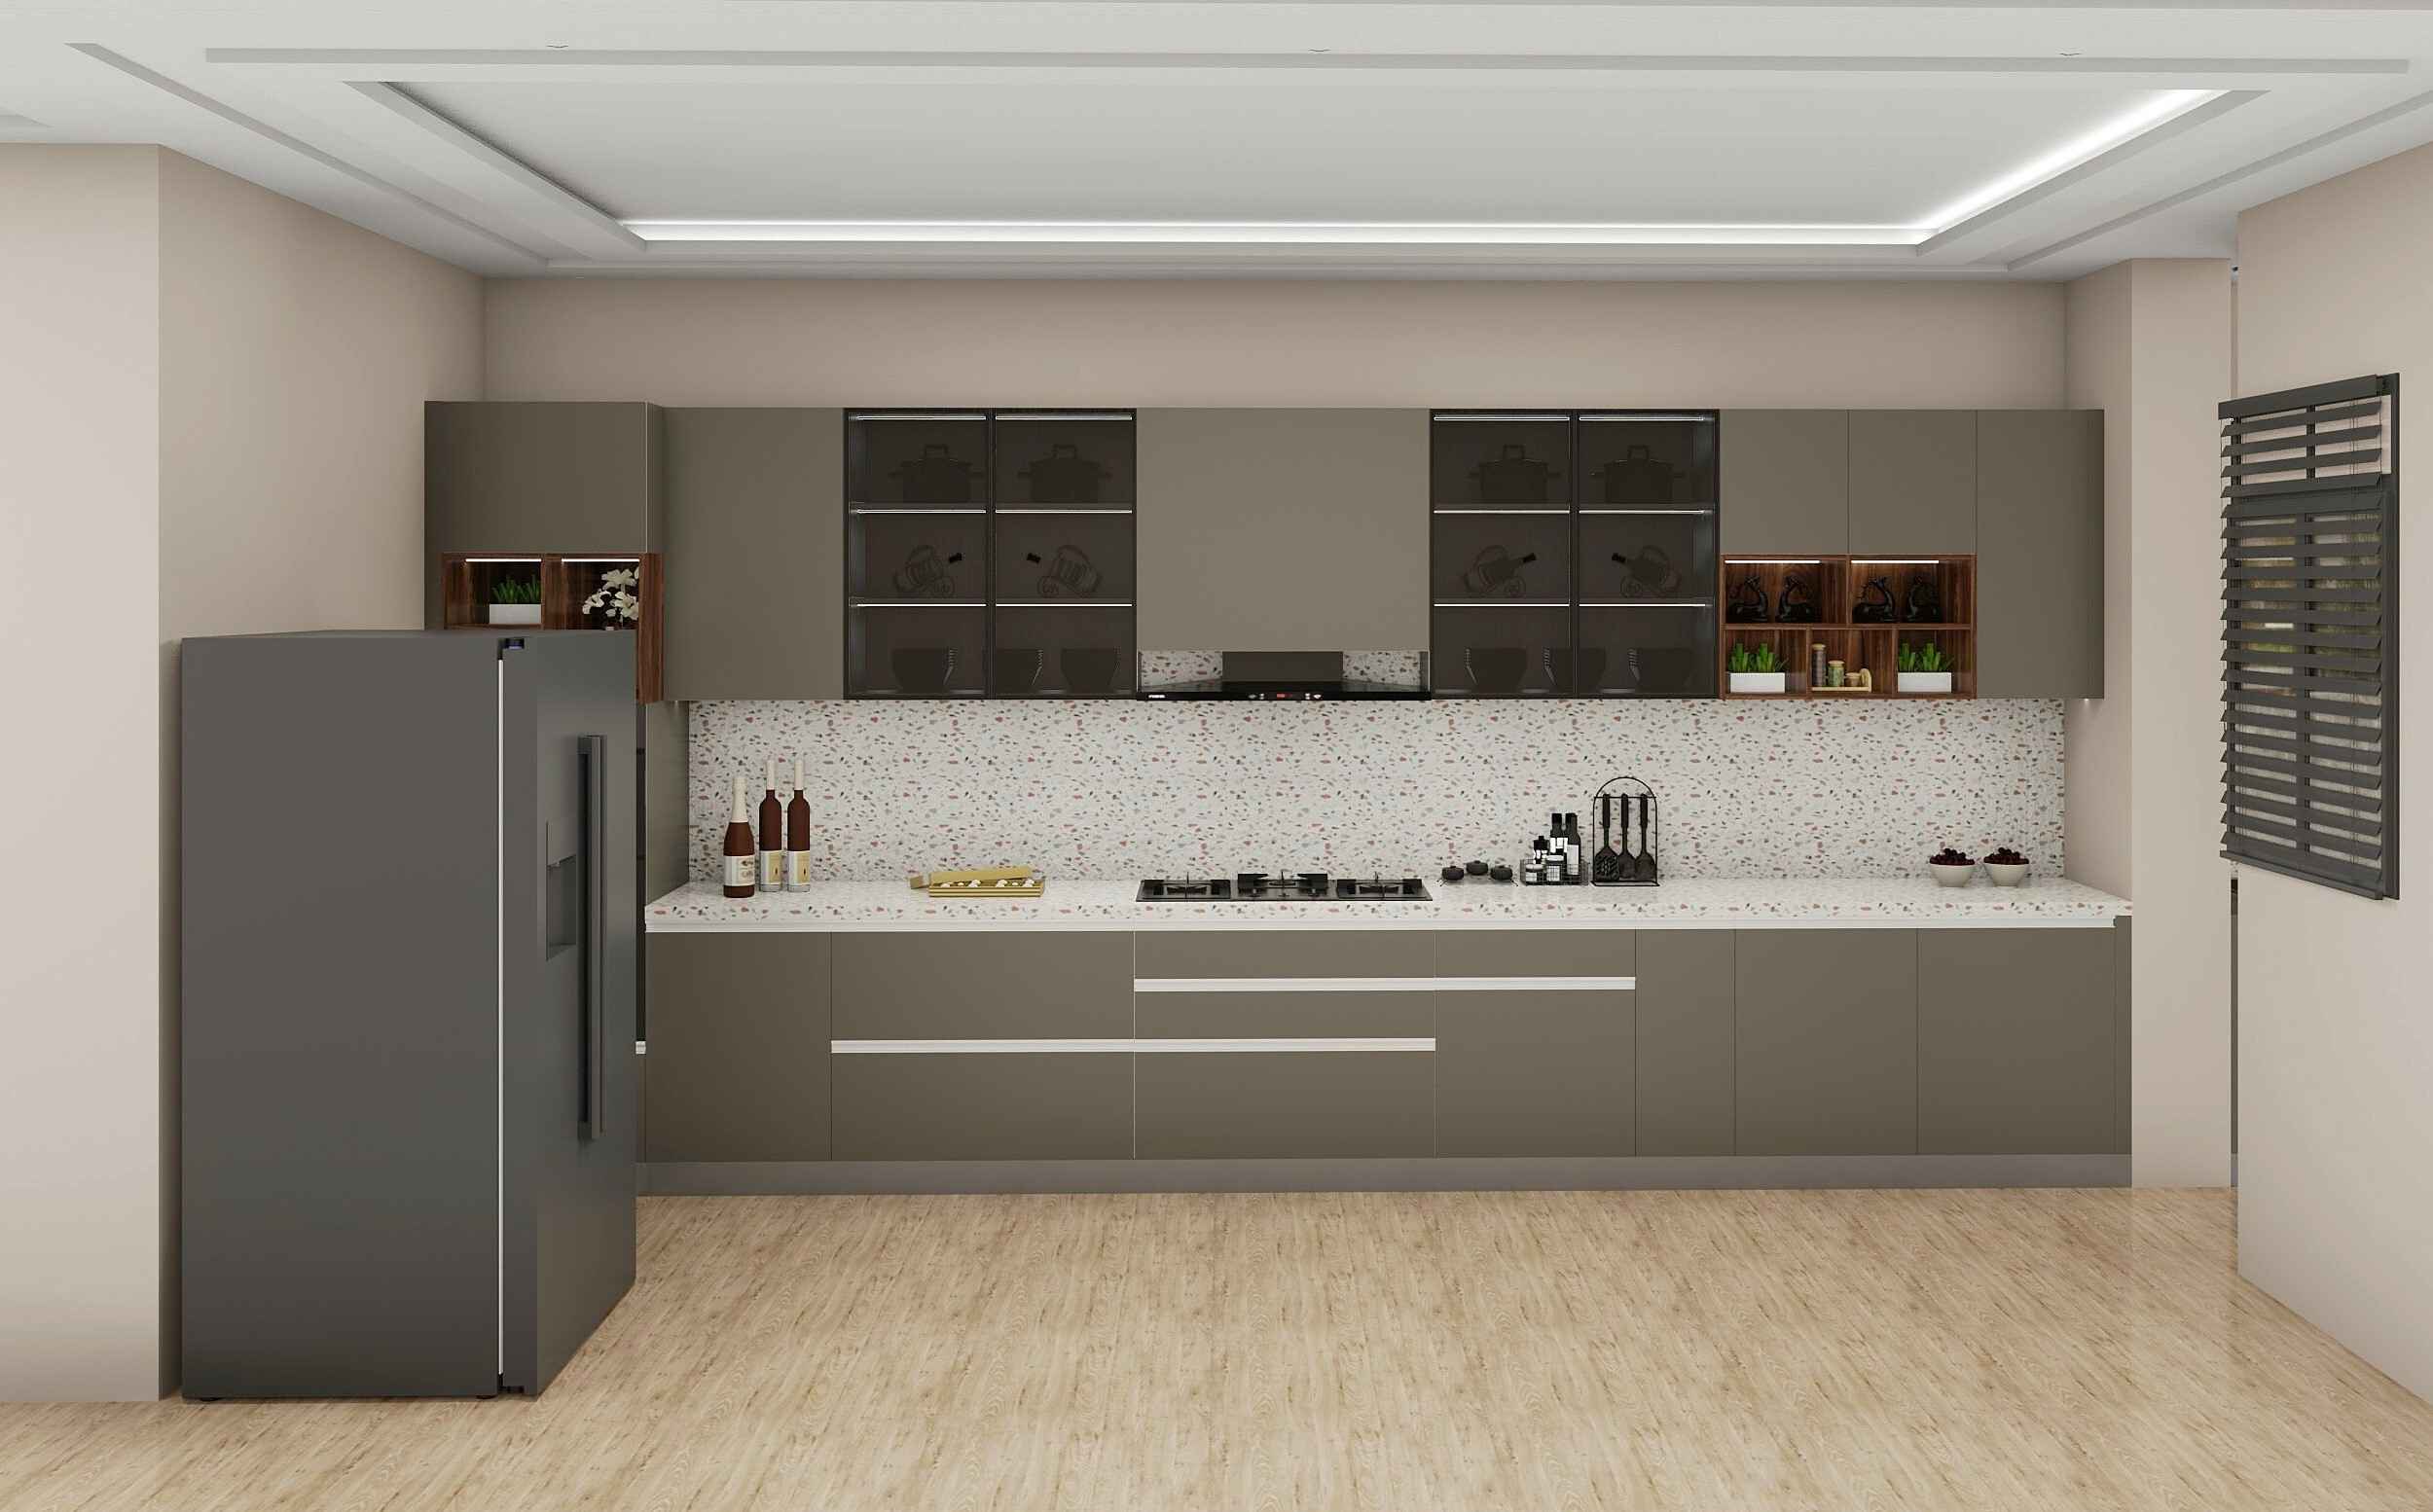 Inline Latest Design Modular Kitchen